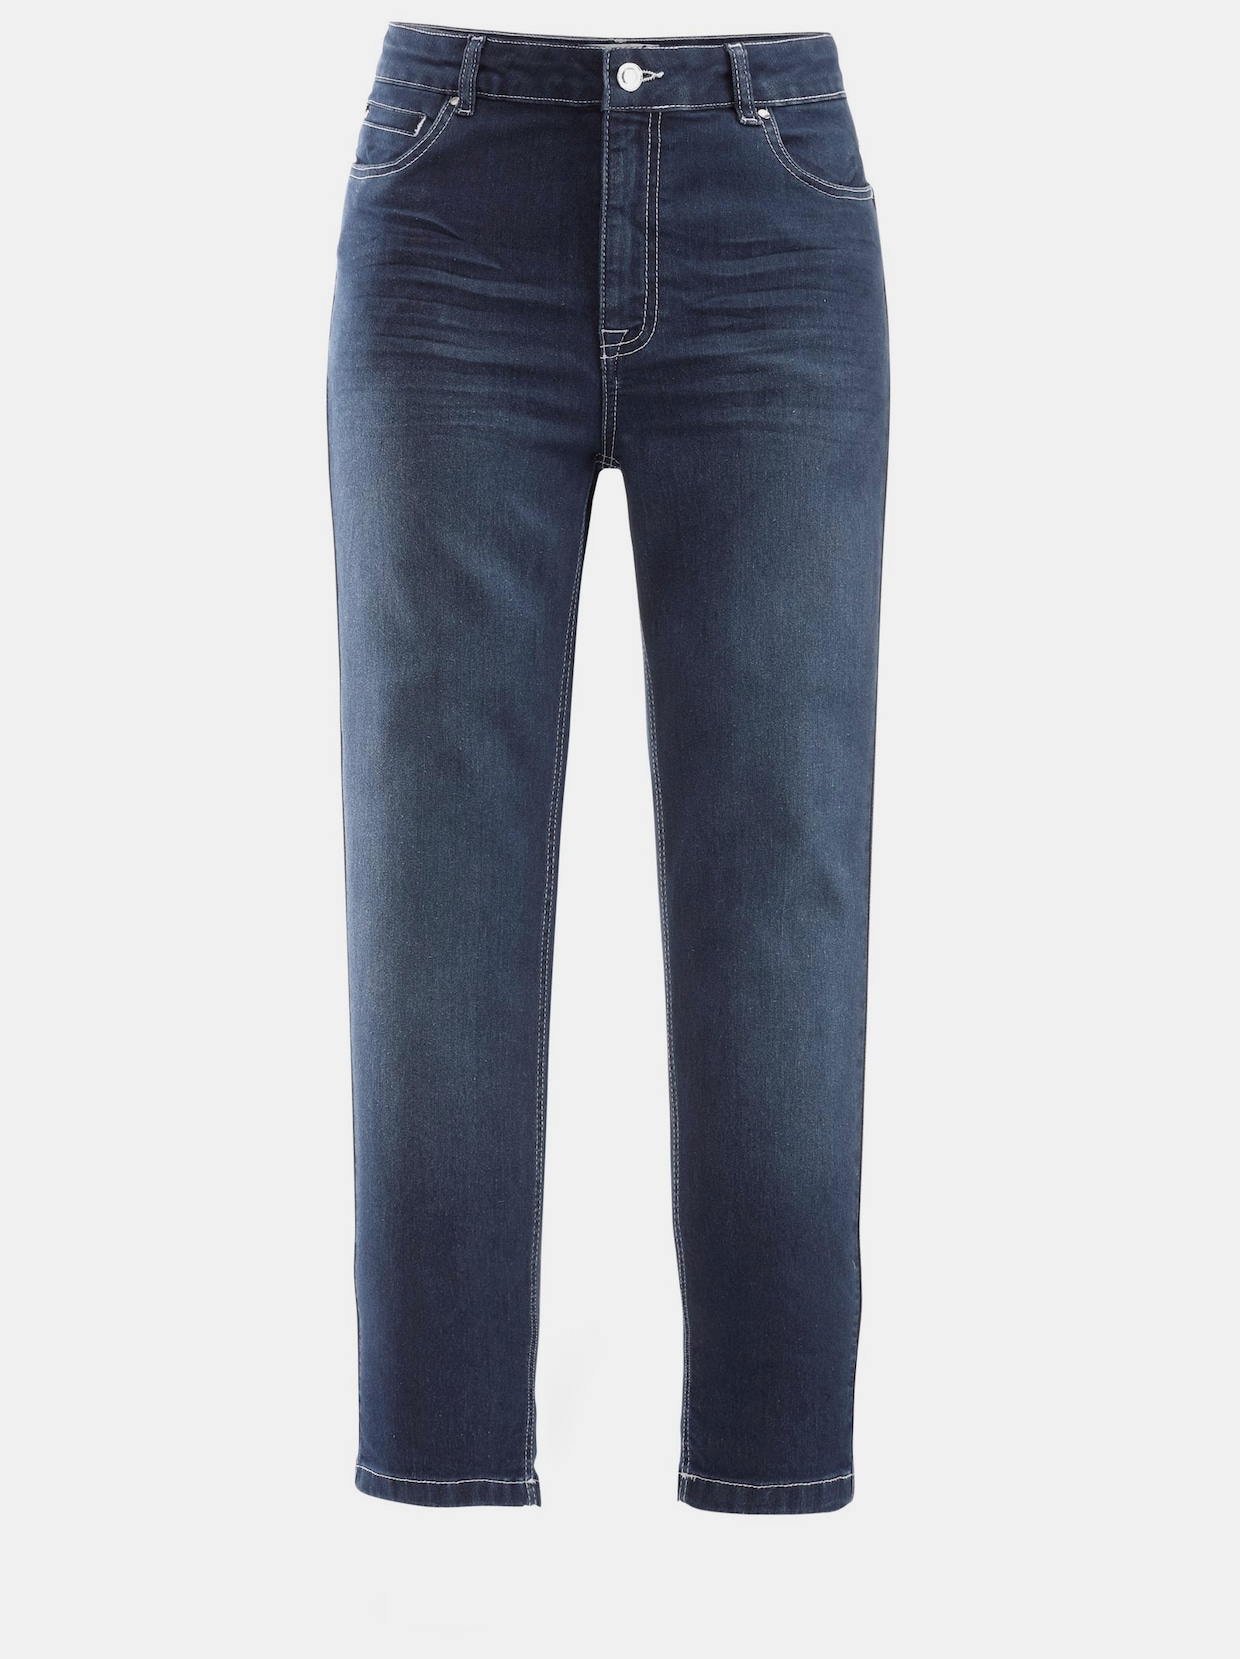 Lässige jeans damen - Die besten Lässige jeans damen verglichen!